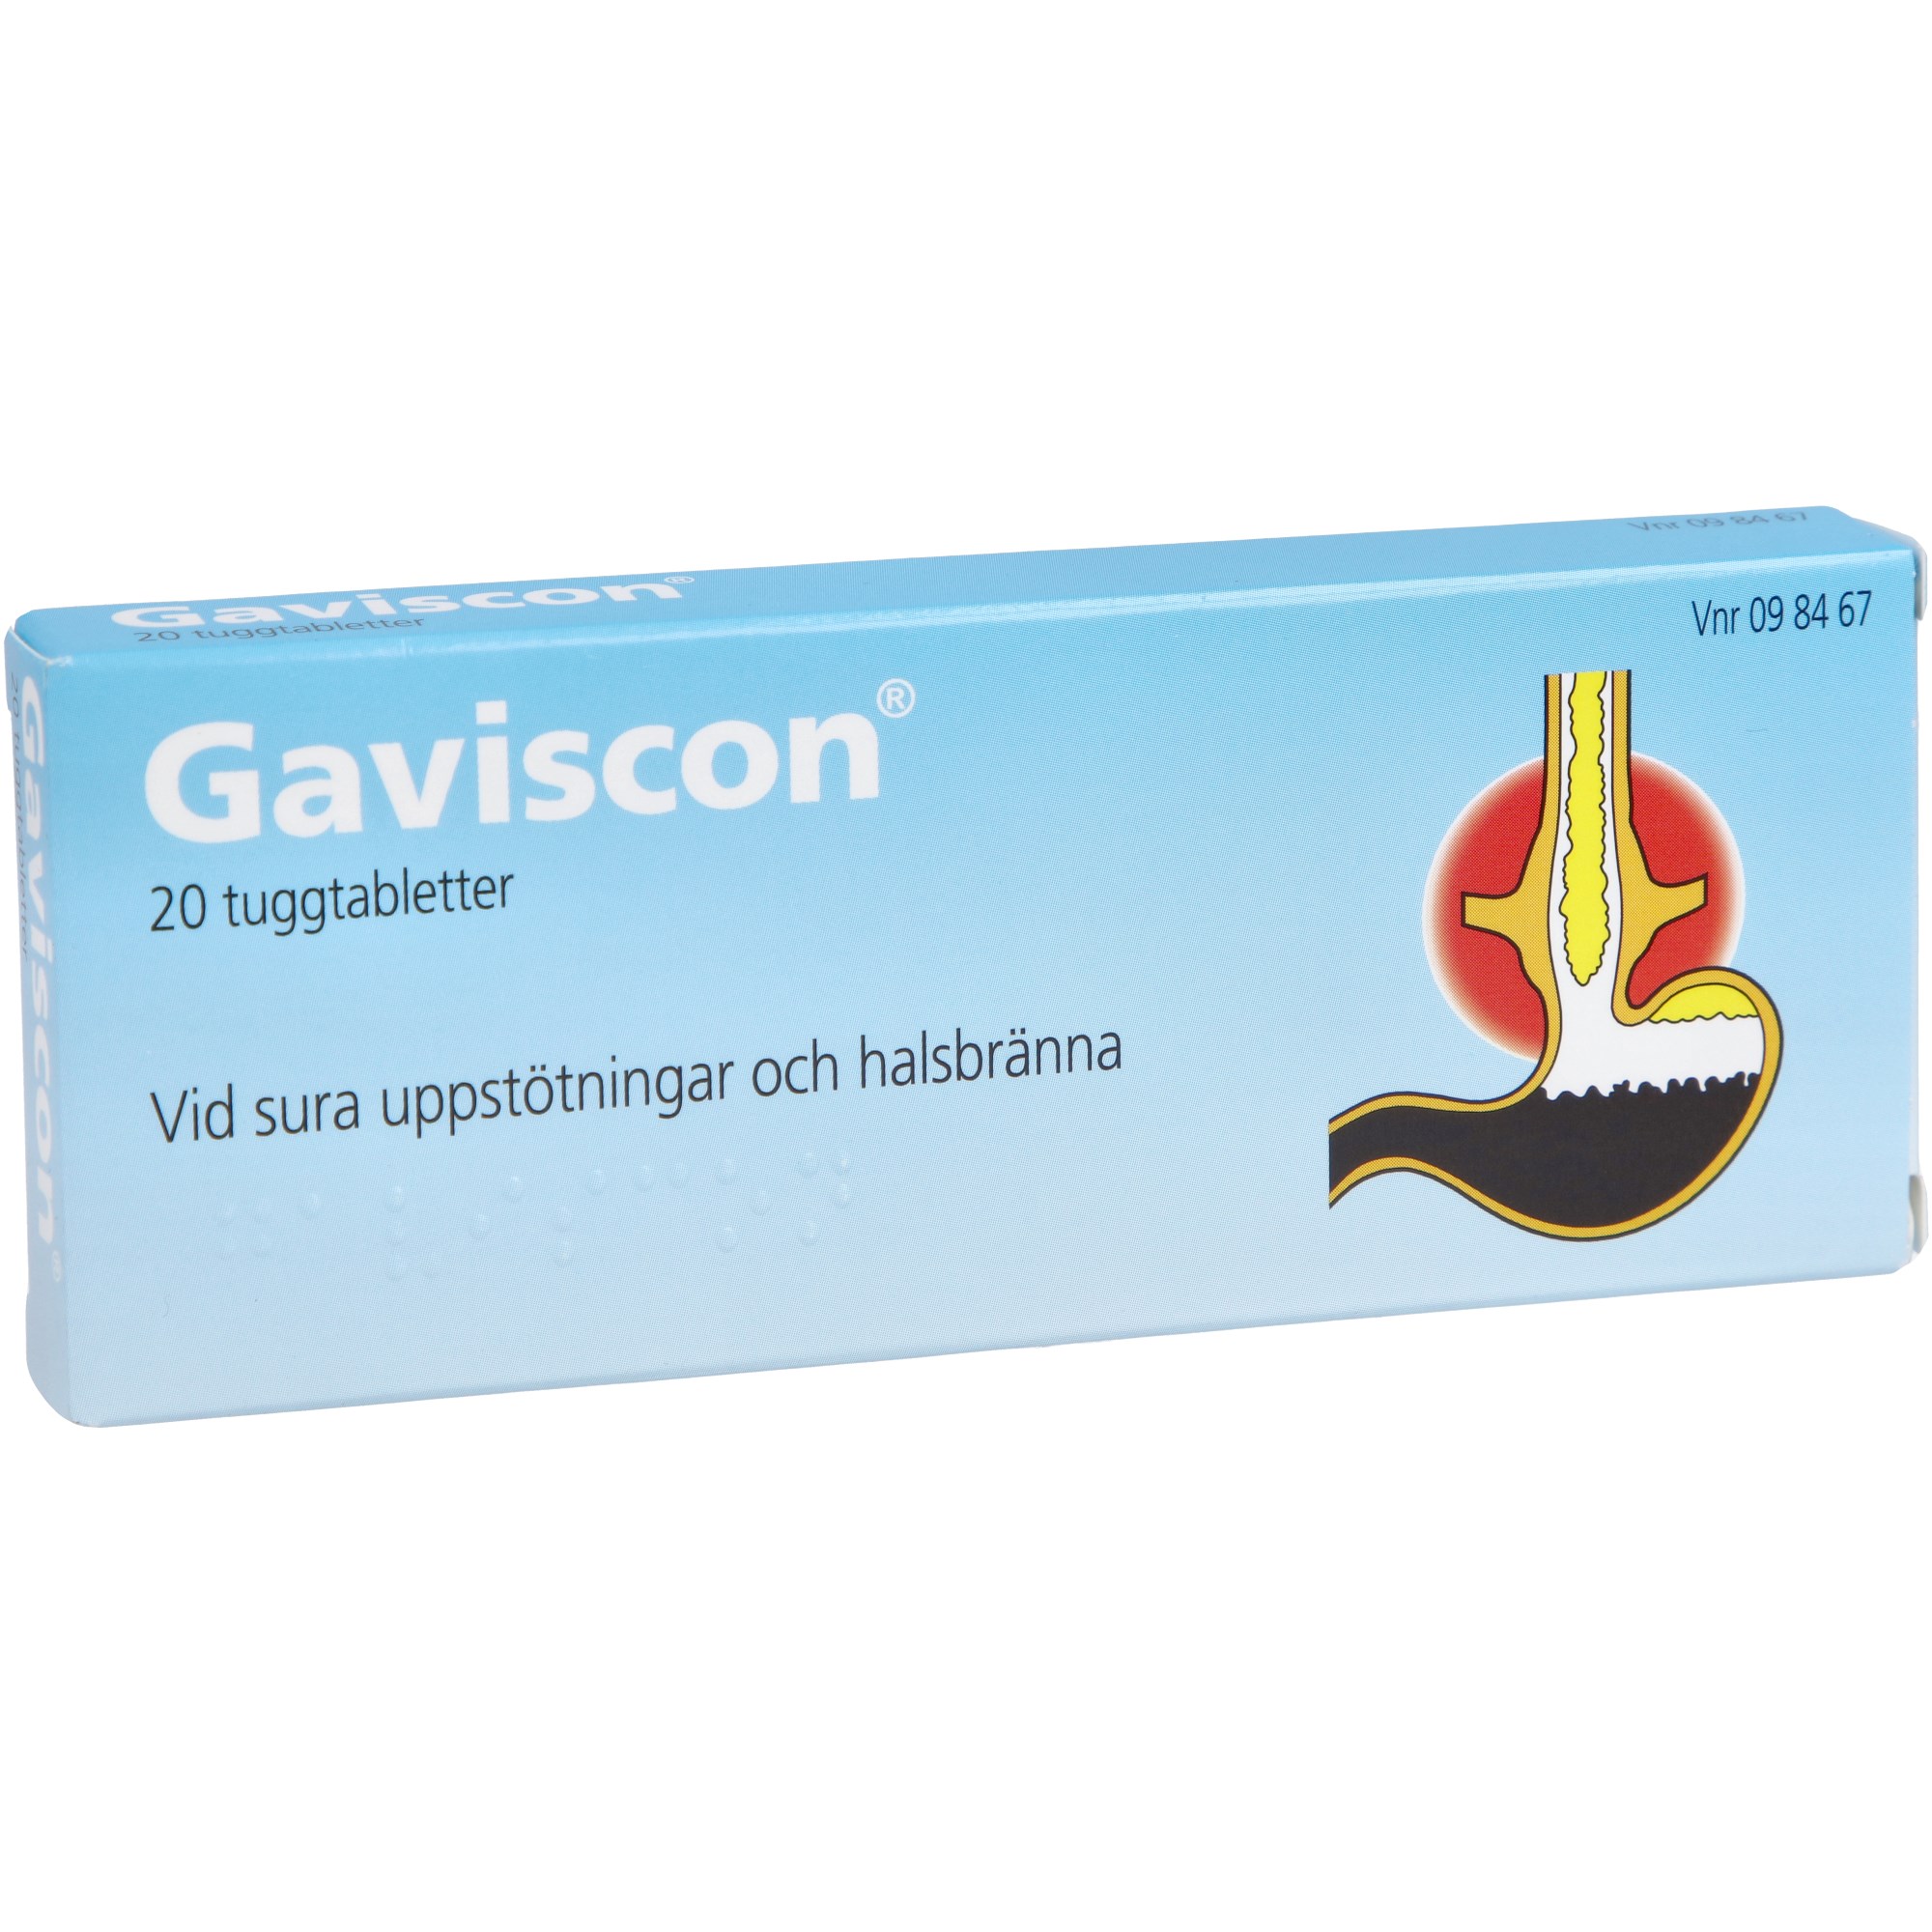 Gaviscon Tuggtablett 20 st